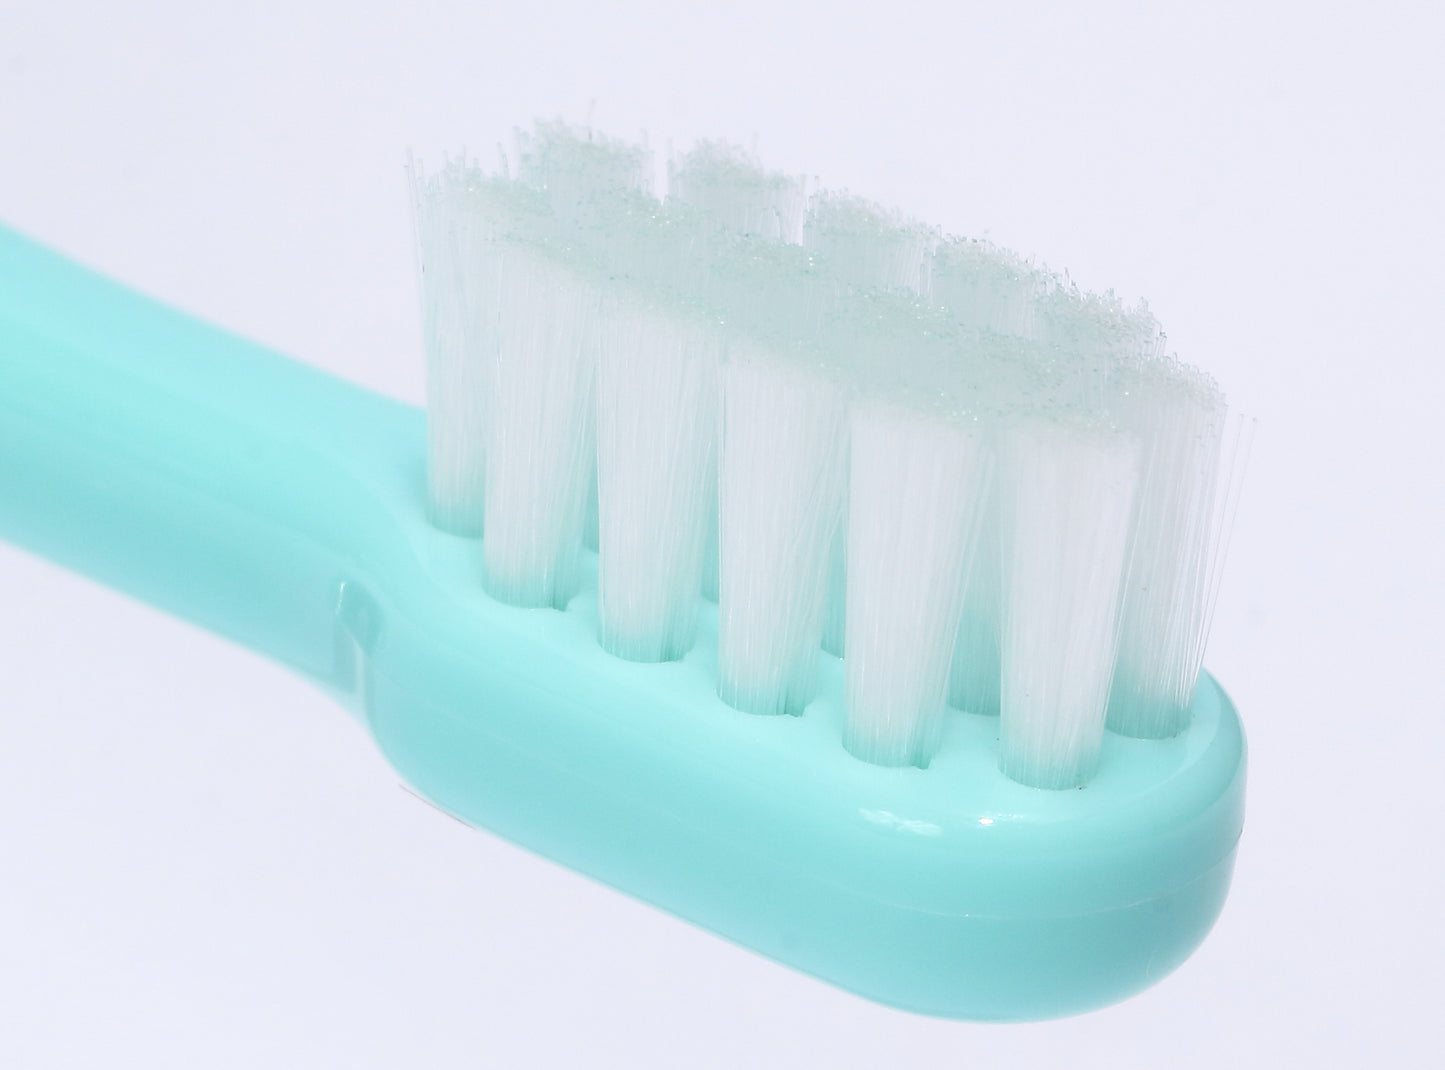 OraBio（オーラバイオブラシ）＜全4タイプ＞ 歯磨き 歯ブラシ デンタルケア ペット用